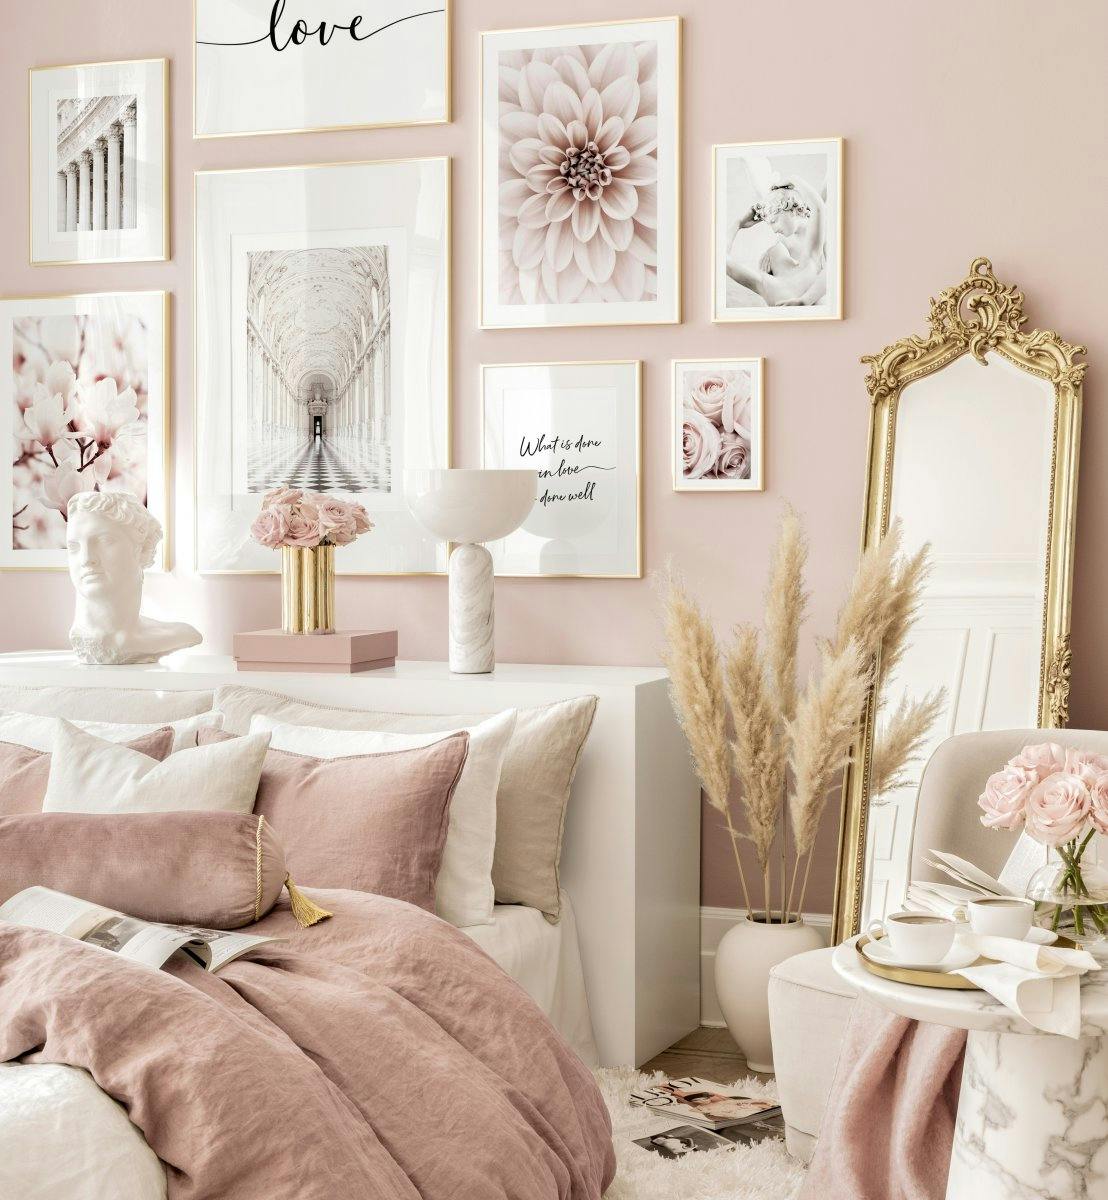 Galeria plakatow rozowy sen plakaty kwiatowe pomysly rozowa sypialnia zlote ramki